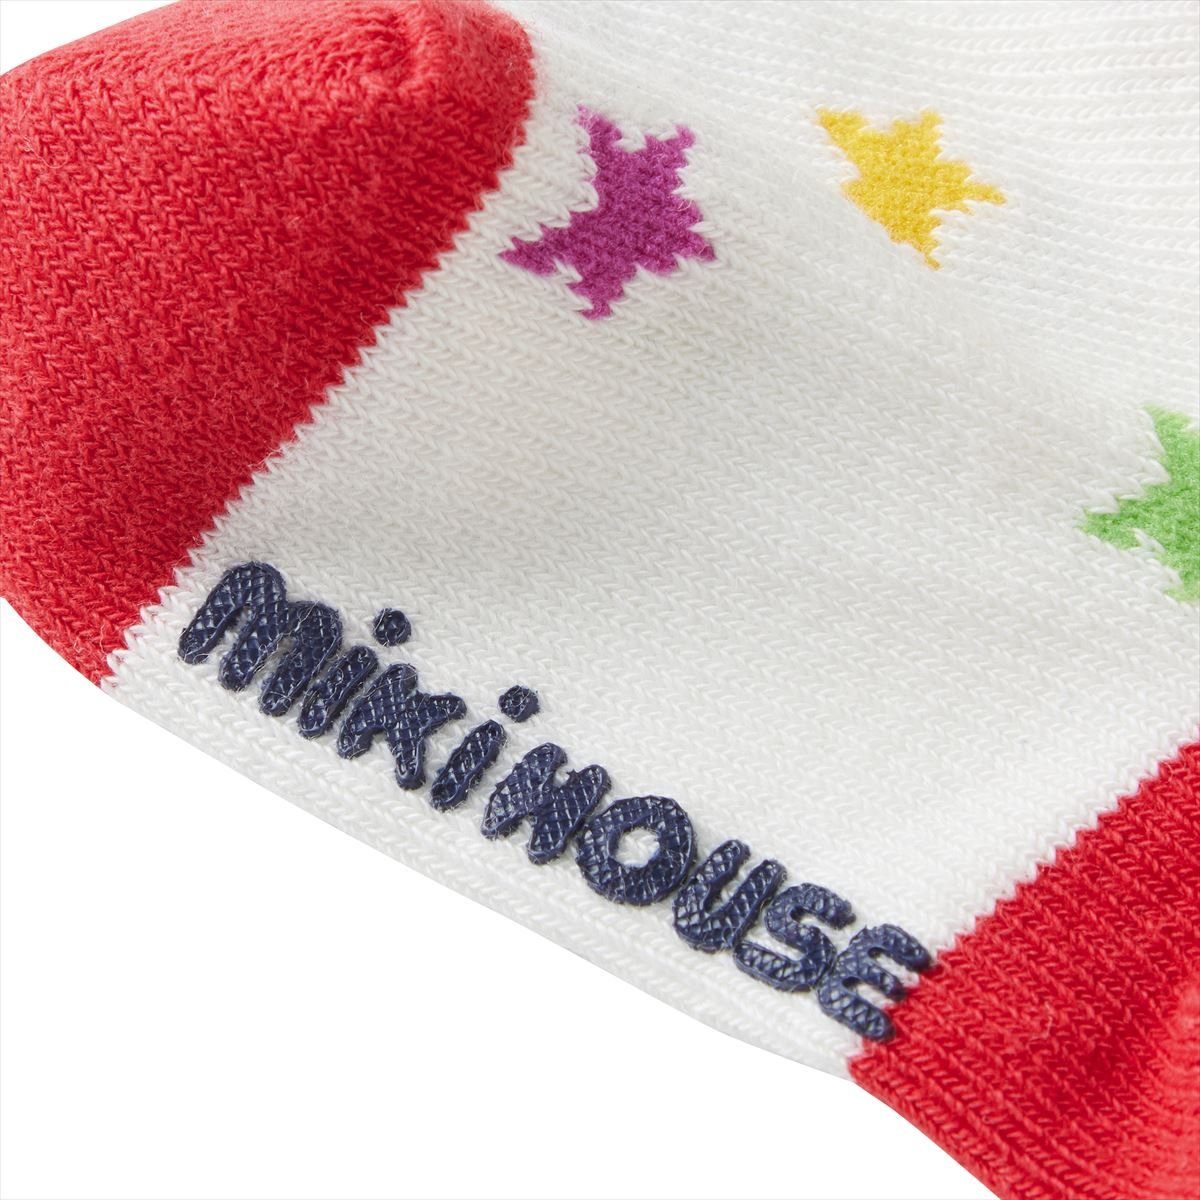 Pucci Socks - MIKI HOUSE USA